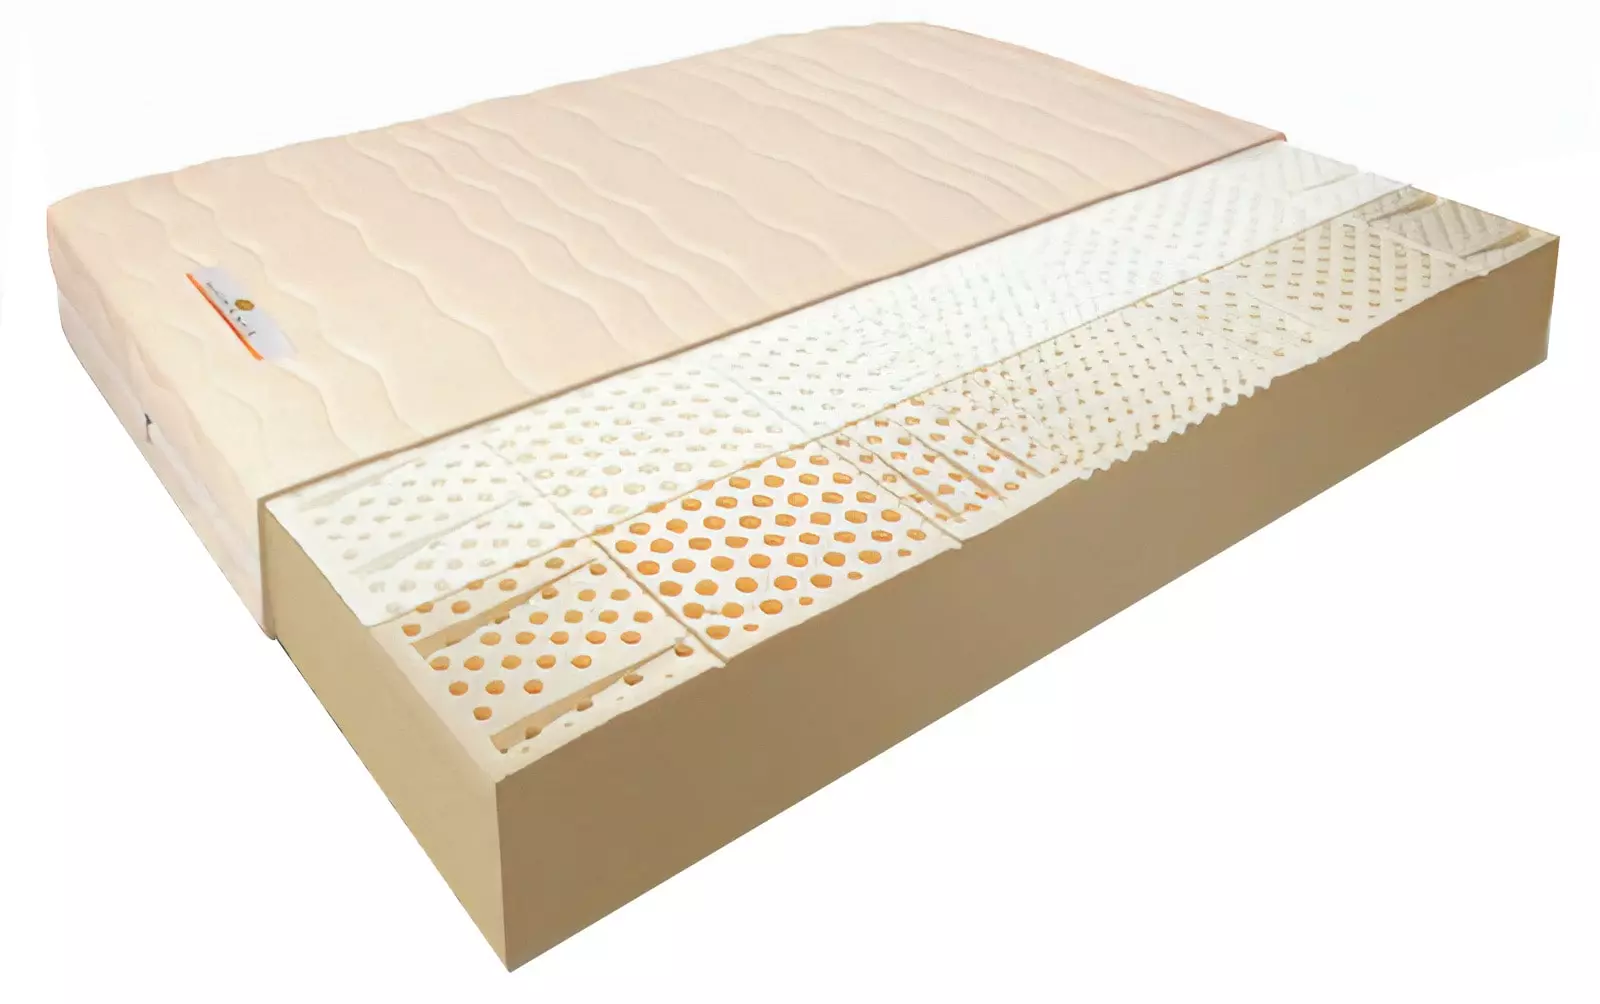 పేలుడు mattress: స్ప్రింగ్స్ లేకుండా mattresses యొక్క లాభాలు మరియు నష్టాలు, నమూనాలు 160x200, 140x200 మరియు ఇతర పరిమాణాలు, ఉత్తమ నాణ్యత దుప్పట్లు రేటింగ్ 9823_26